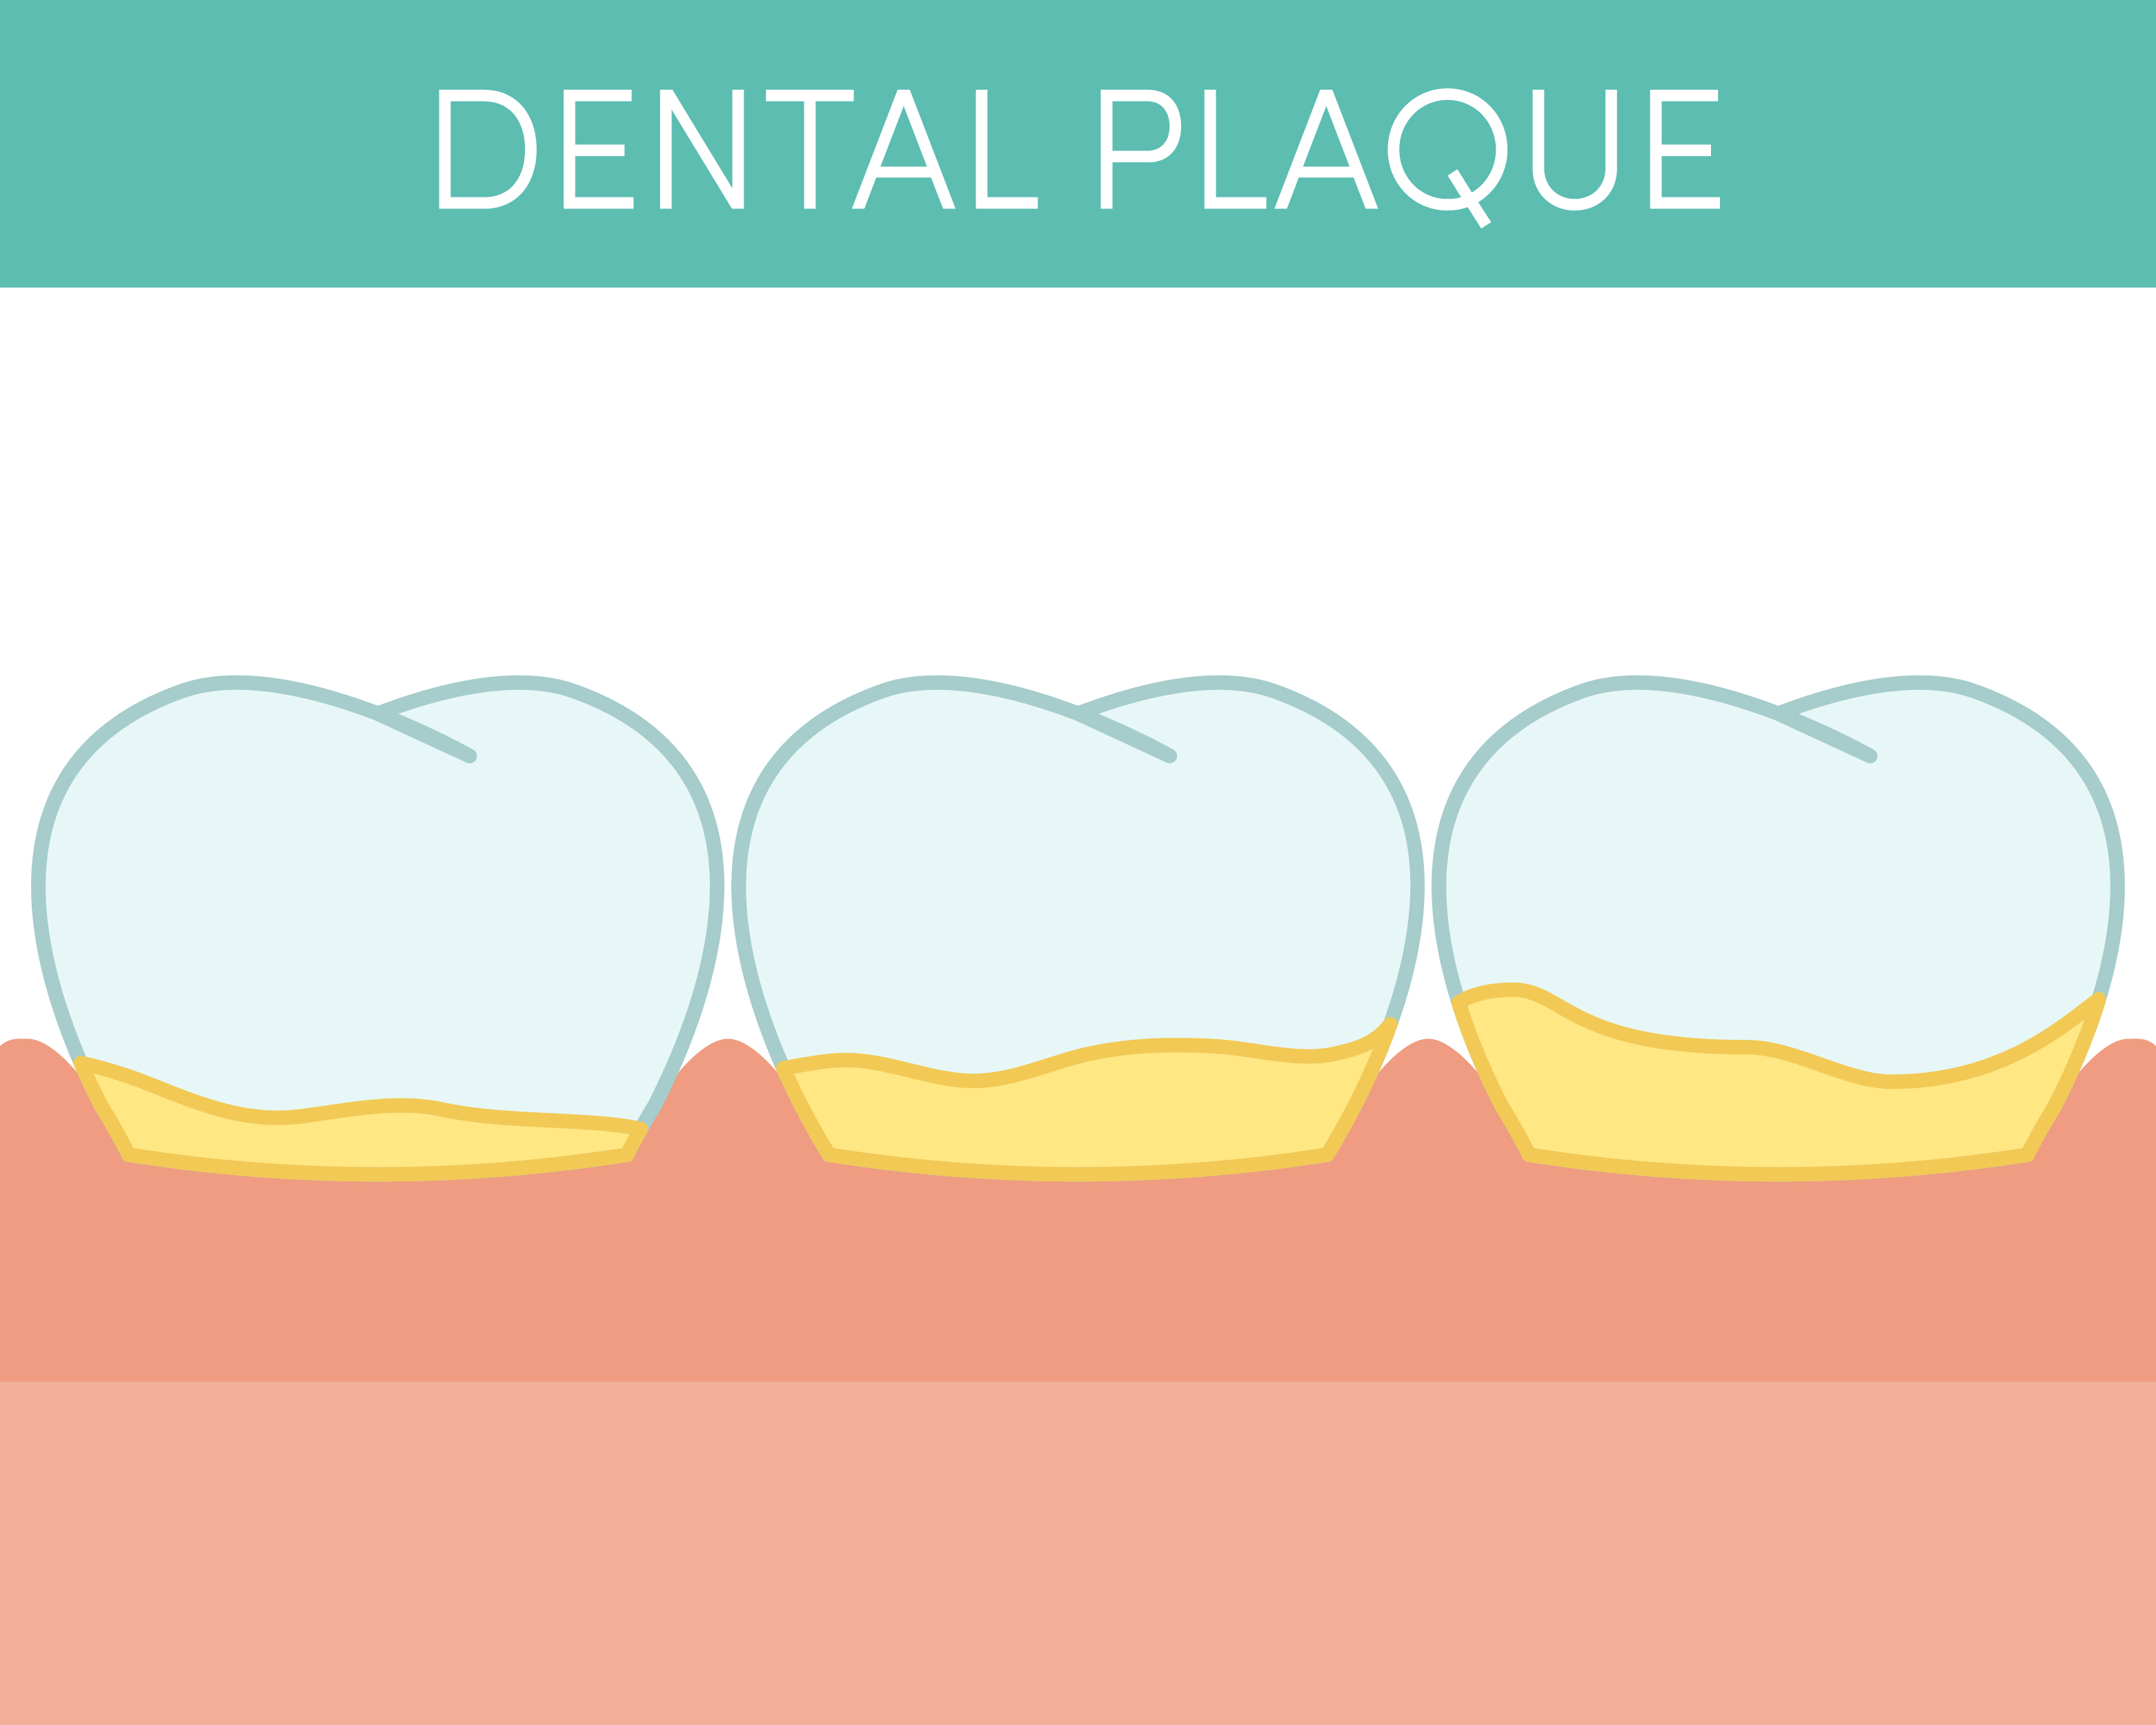 Illustration of plaque buildup on teeth